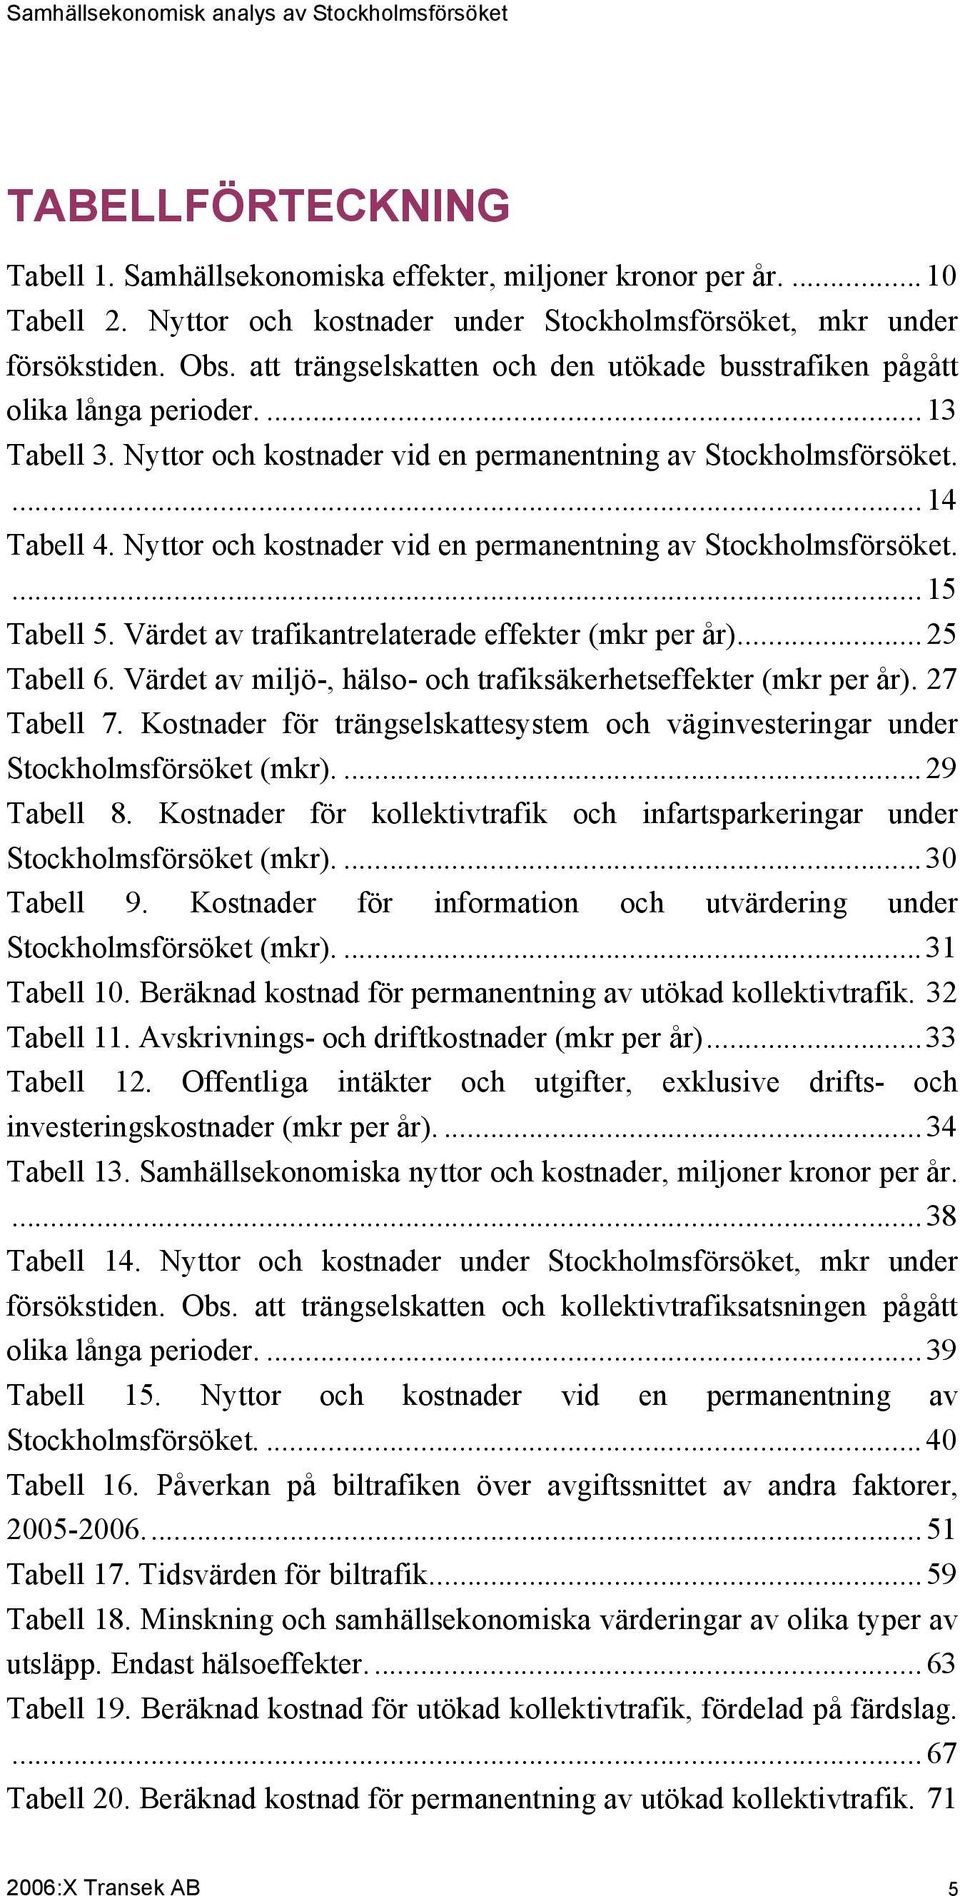 Nyttor och kostnader vid en permanentning av Stockholmsförsöket....15 Tabell 5. Värdet av trafikantrelaterade effekter (mkr per år)...25 Tabell 6.